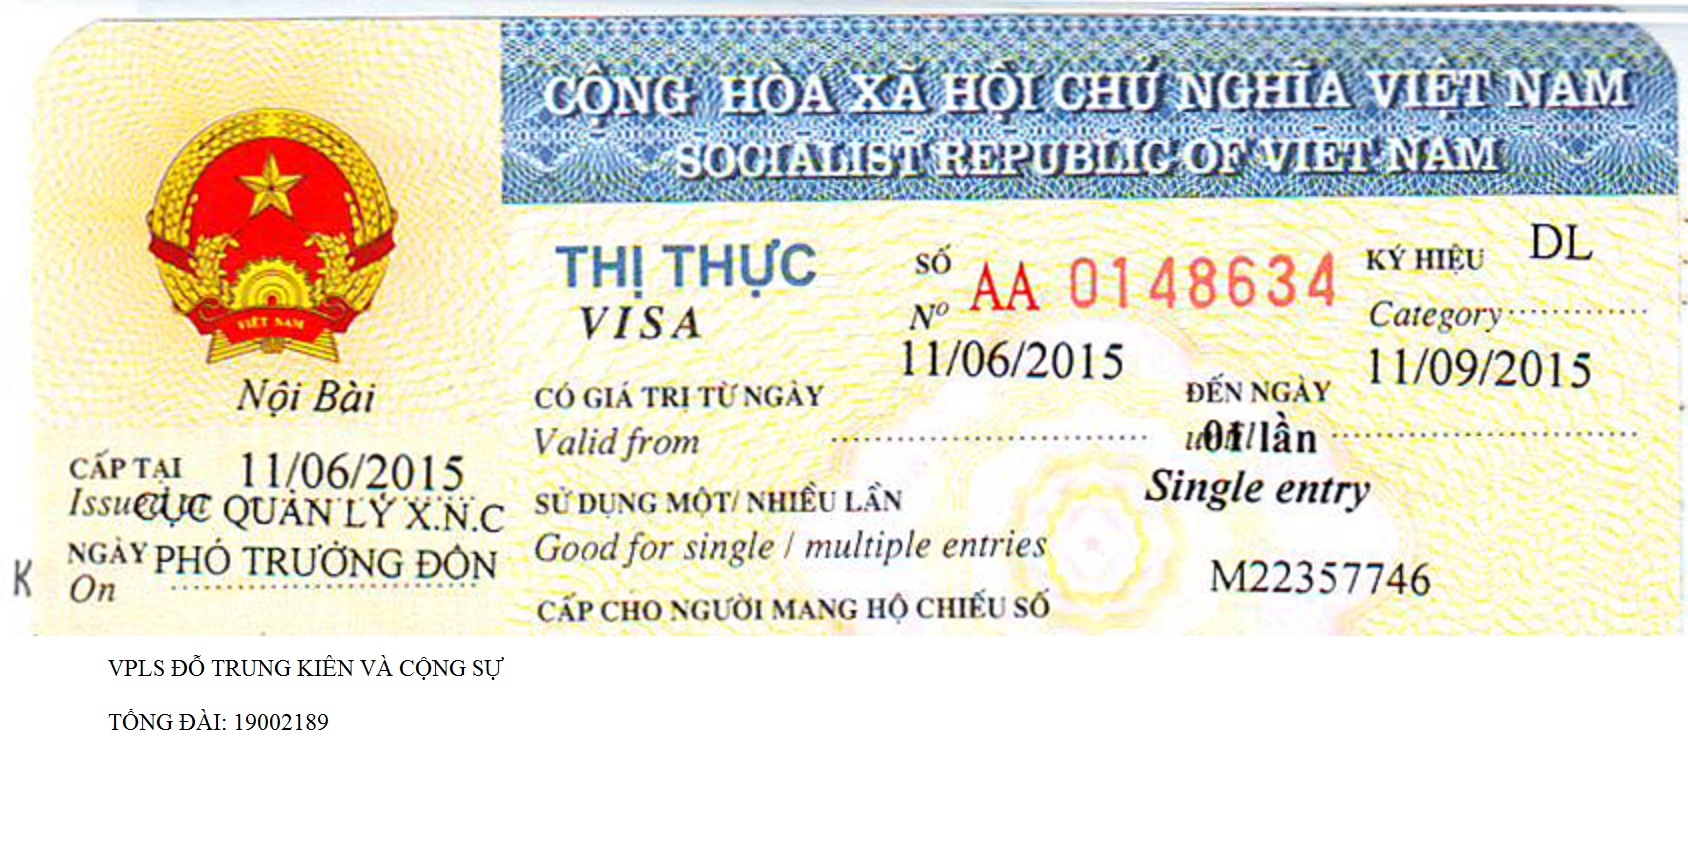 Thủ tục xin visa cho người nước ngoài tại Nghệ An